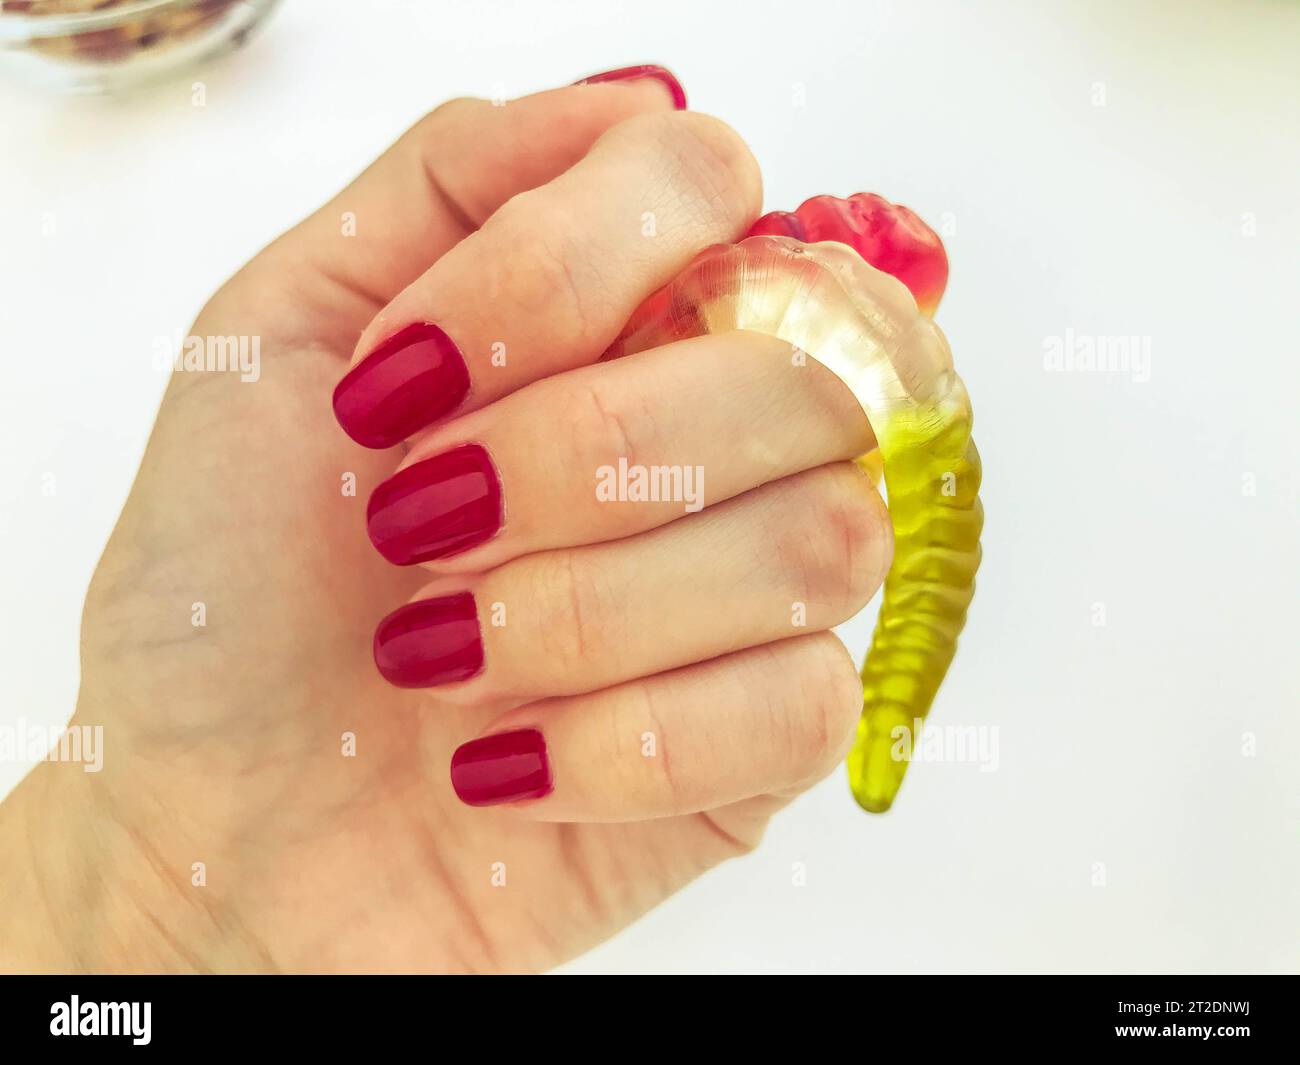 molti vermi gommosi si trovano con una ragazza con una manicure rossa su sfondo arancione opaco. delizioso dessert appetitoso. vermi fatti a mano. Foto Stock